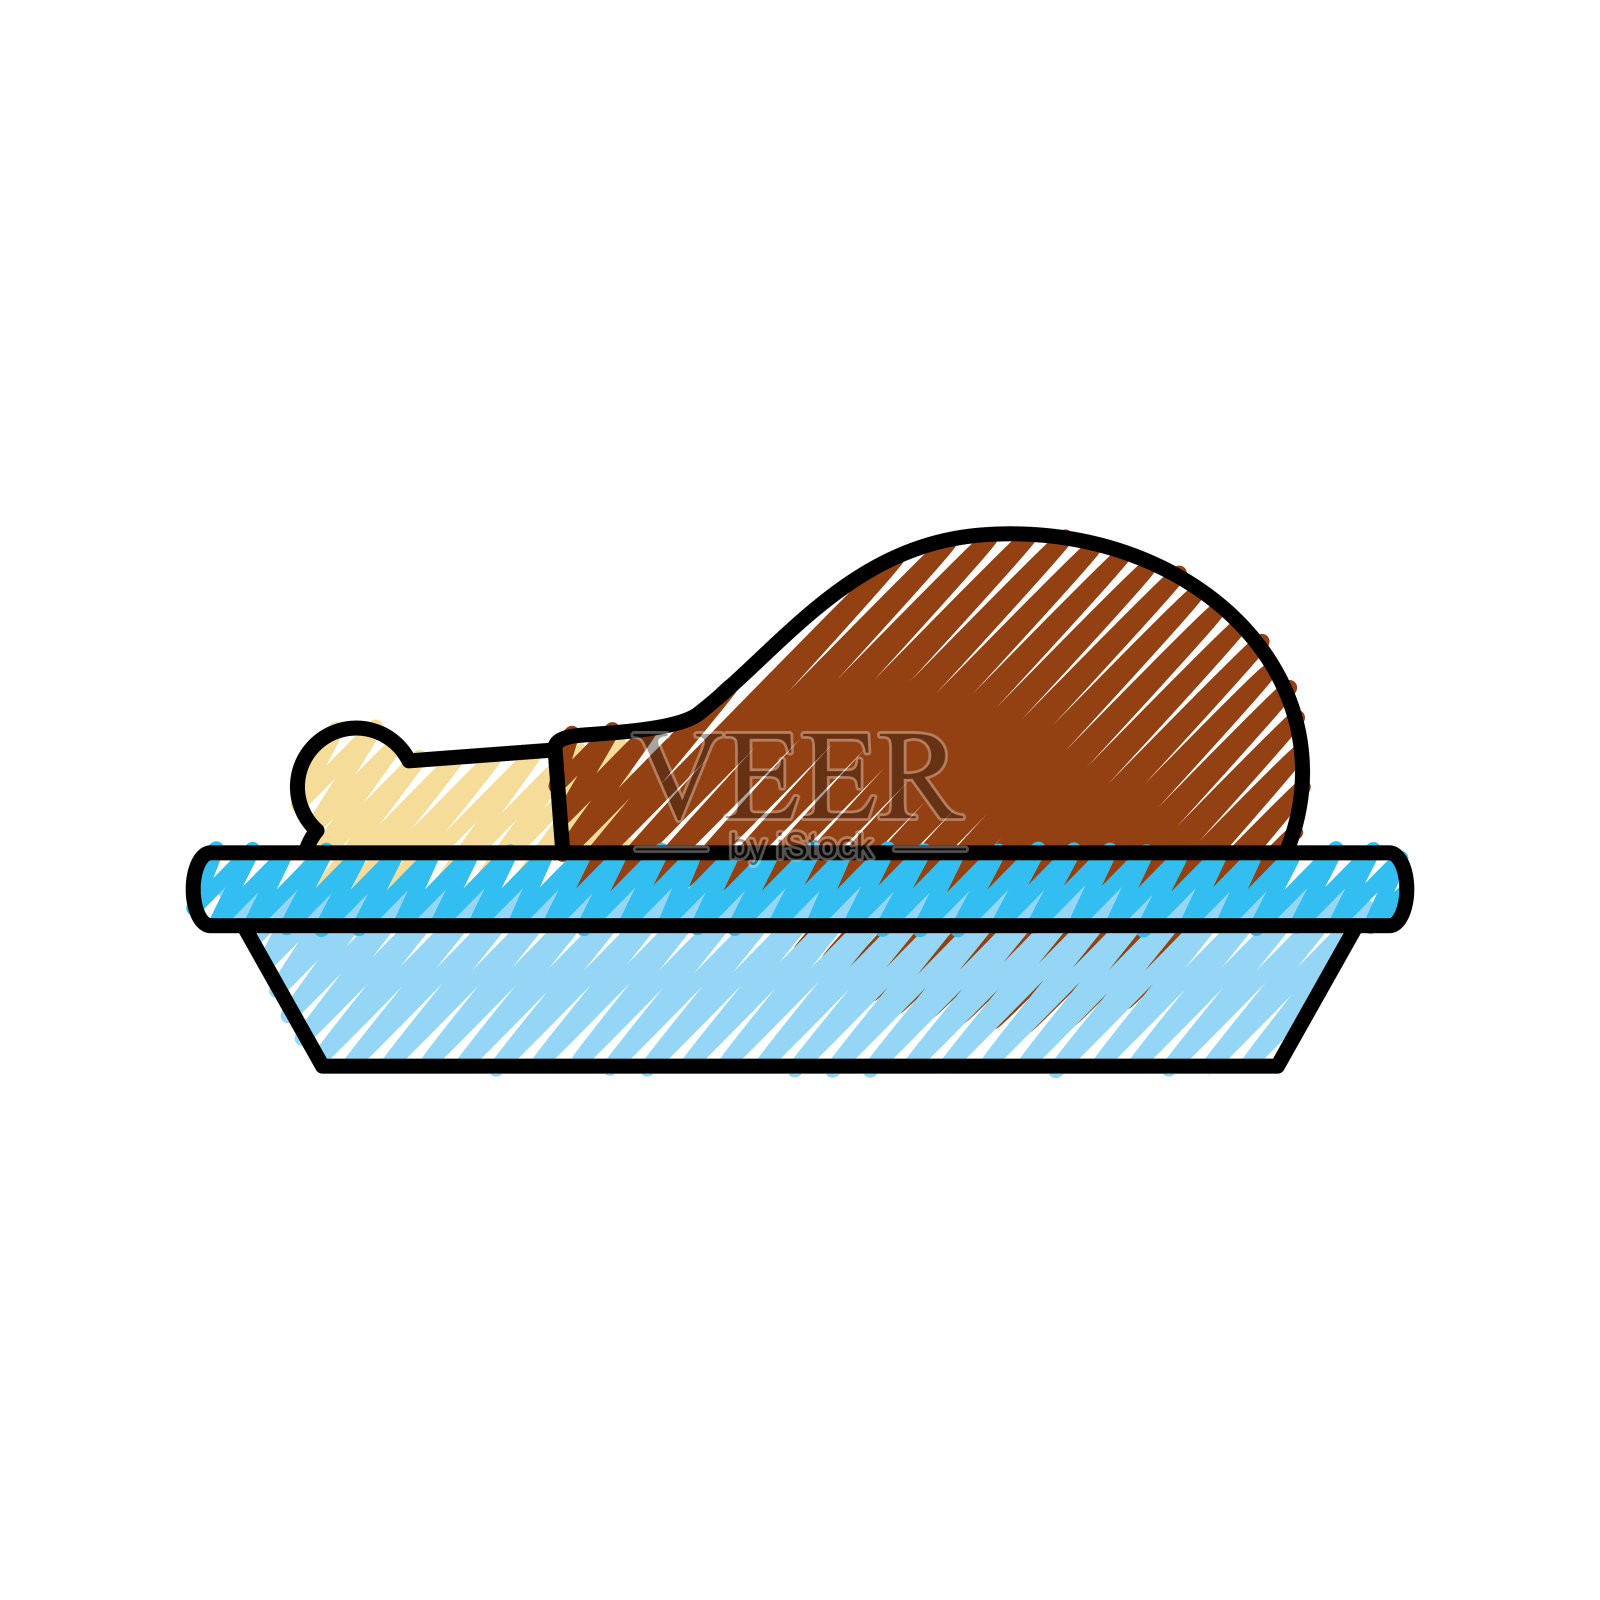 感恩节大餐菜单上有鸡或火鸡插画图片素材